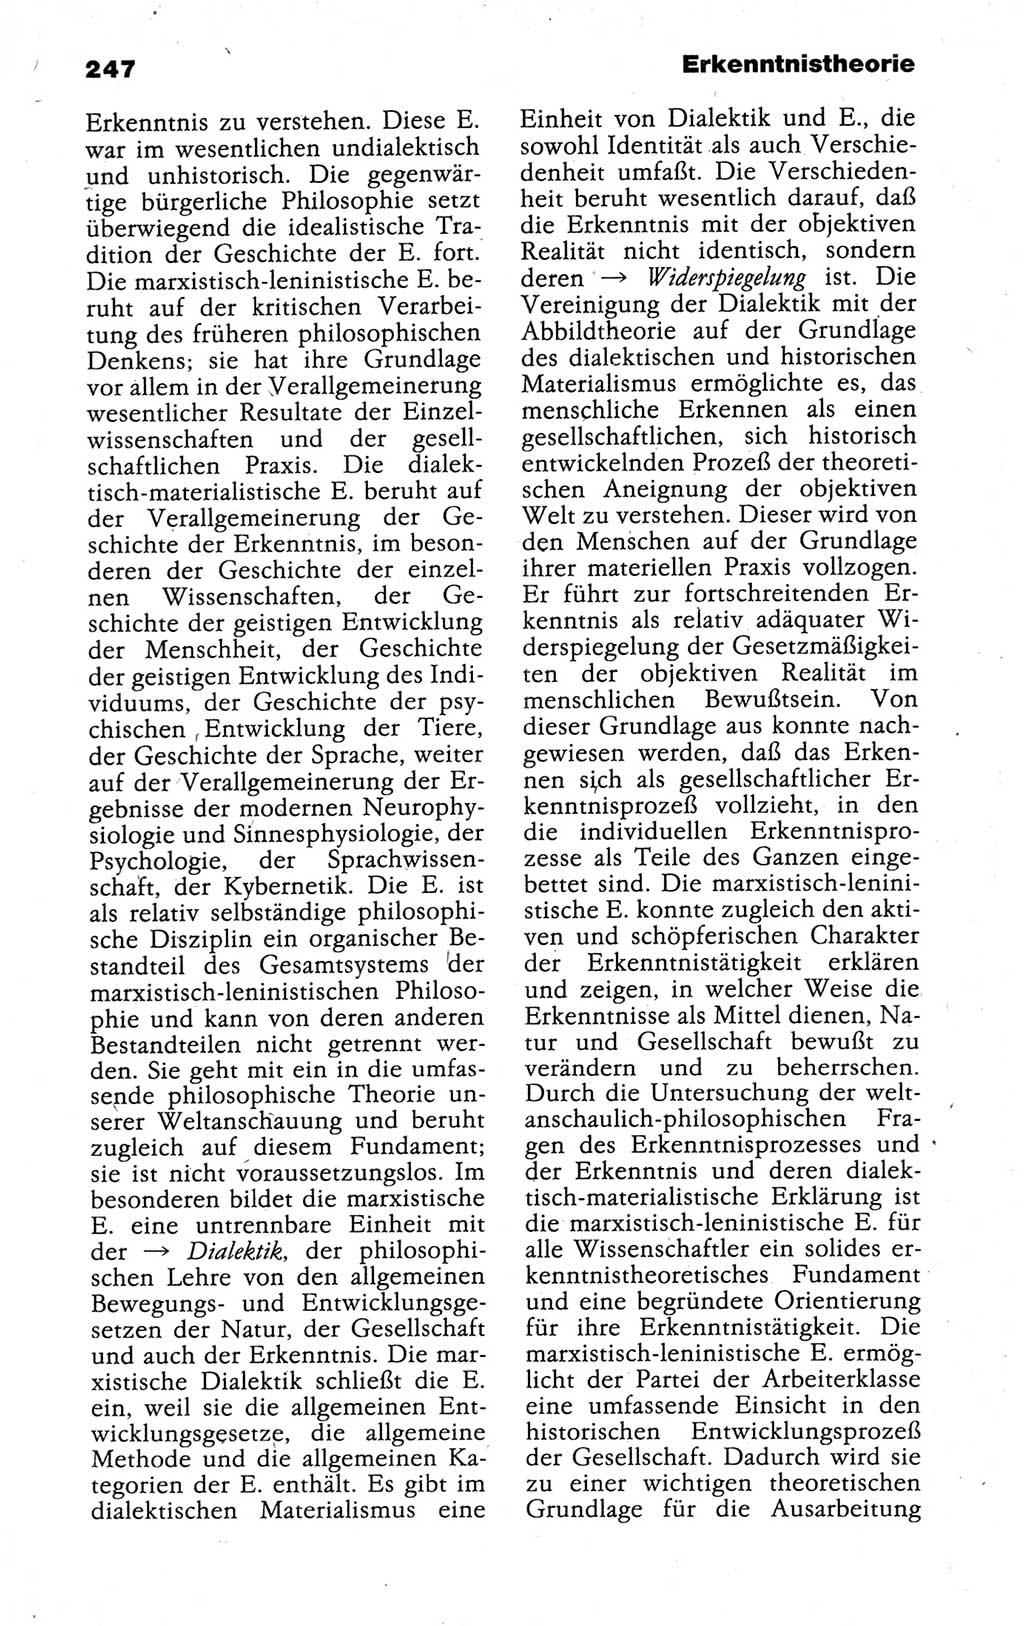 Kleines politisches Wörterbuch [Deutsche Demokratische Republik (DDR)] 1988, Seite 247 (Kl. pol. Wb. DDR 1988, S. 247)